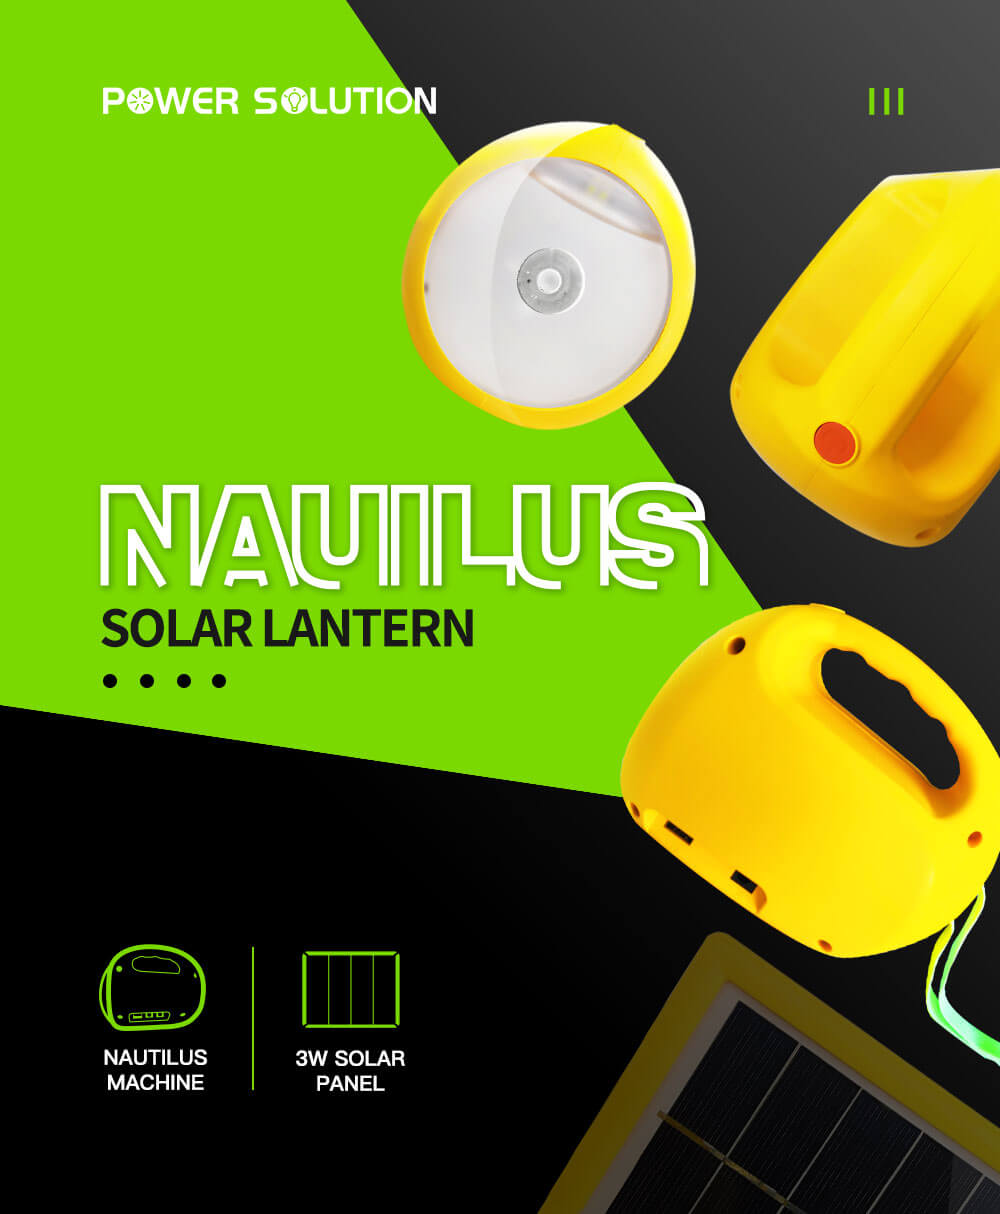 Nautilus Solar Lantern